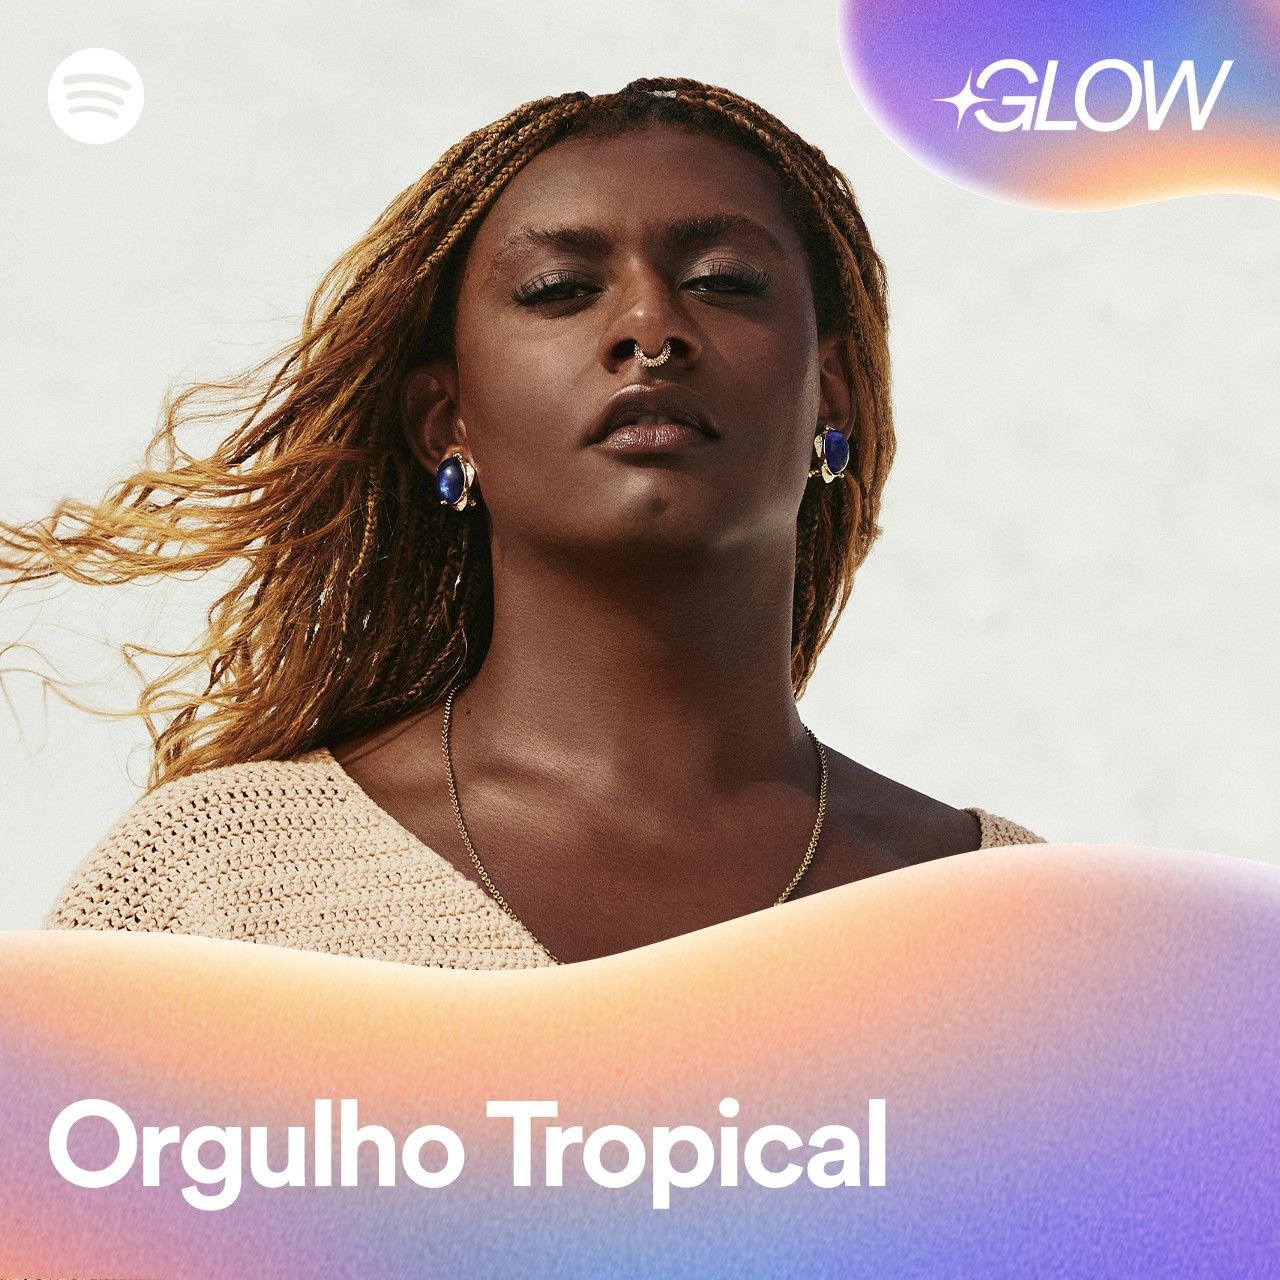 A brasileira Liniker é capa da playlist o “Orgulho Tropical” no hub GLOW.